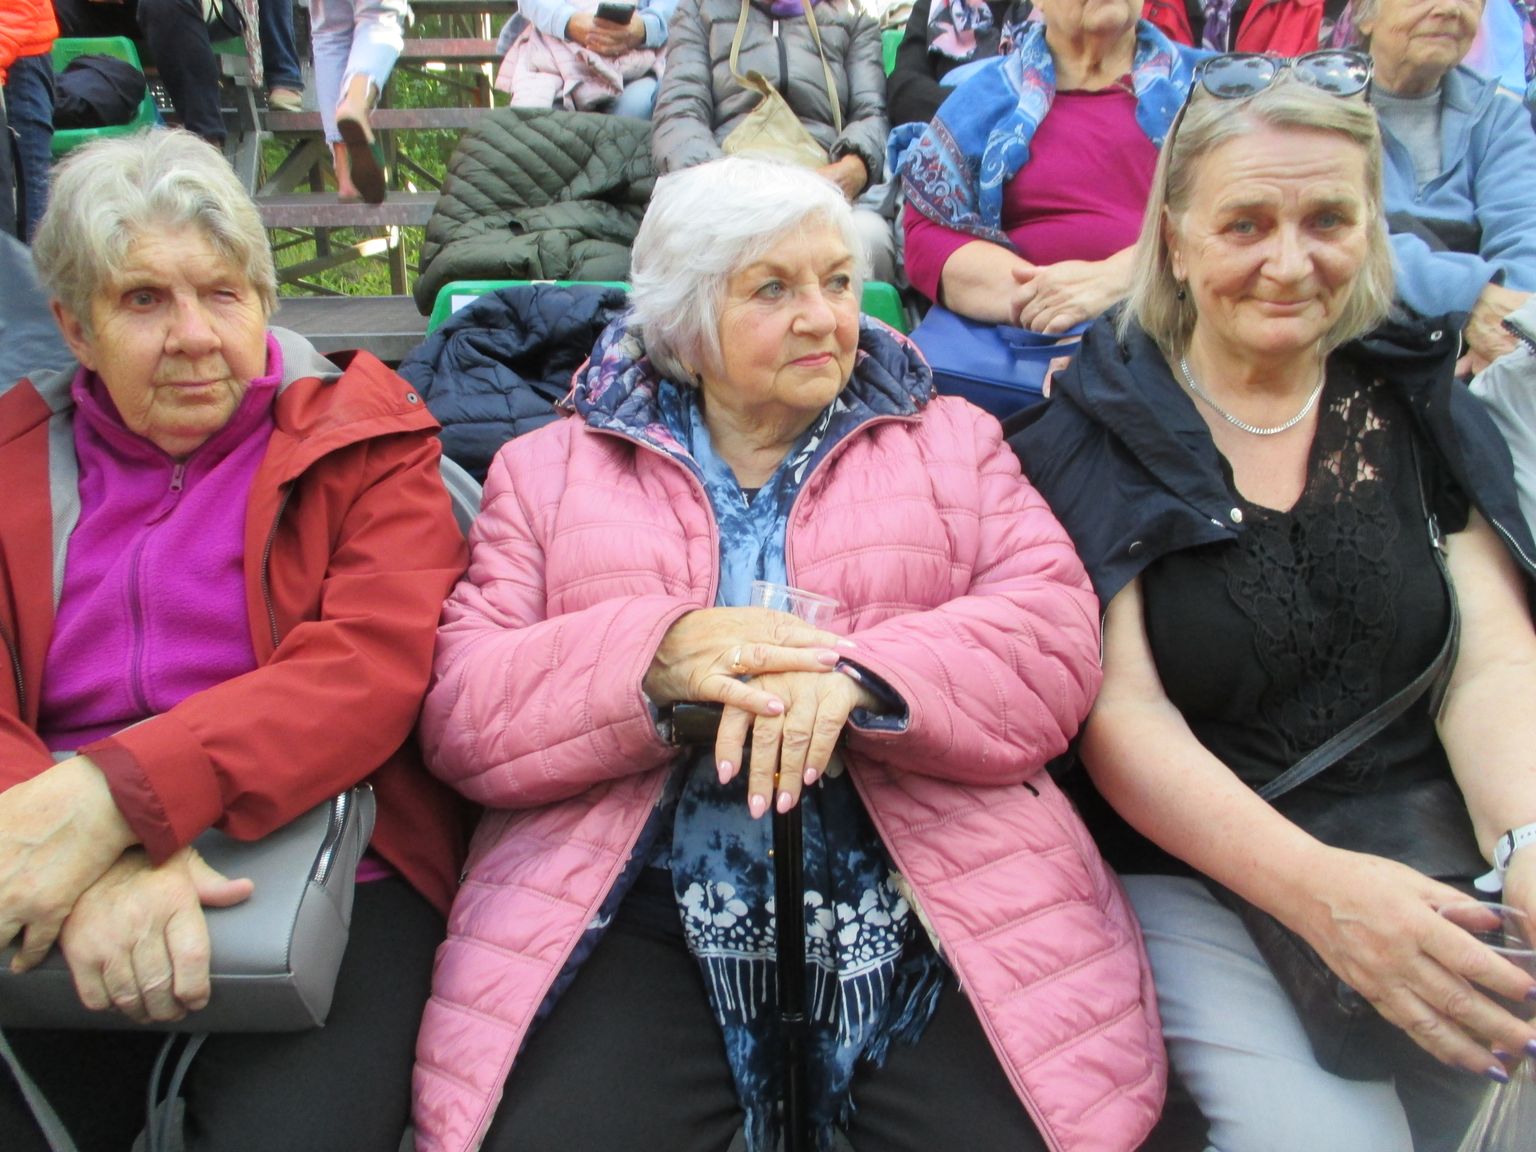 SAARLASED "UKUARU" KAEMAS: Tiiu Talk (vasakul), Tiia Holm ja Ivi Saar
Salmelt jäid Vooremäele sõiduga väga rahule. Etendus meeldis.